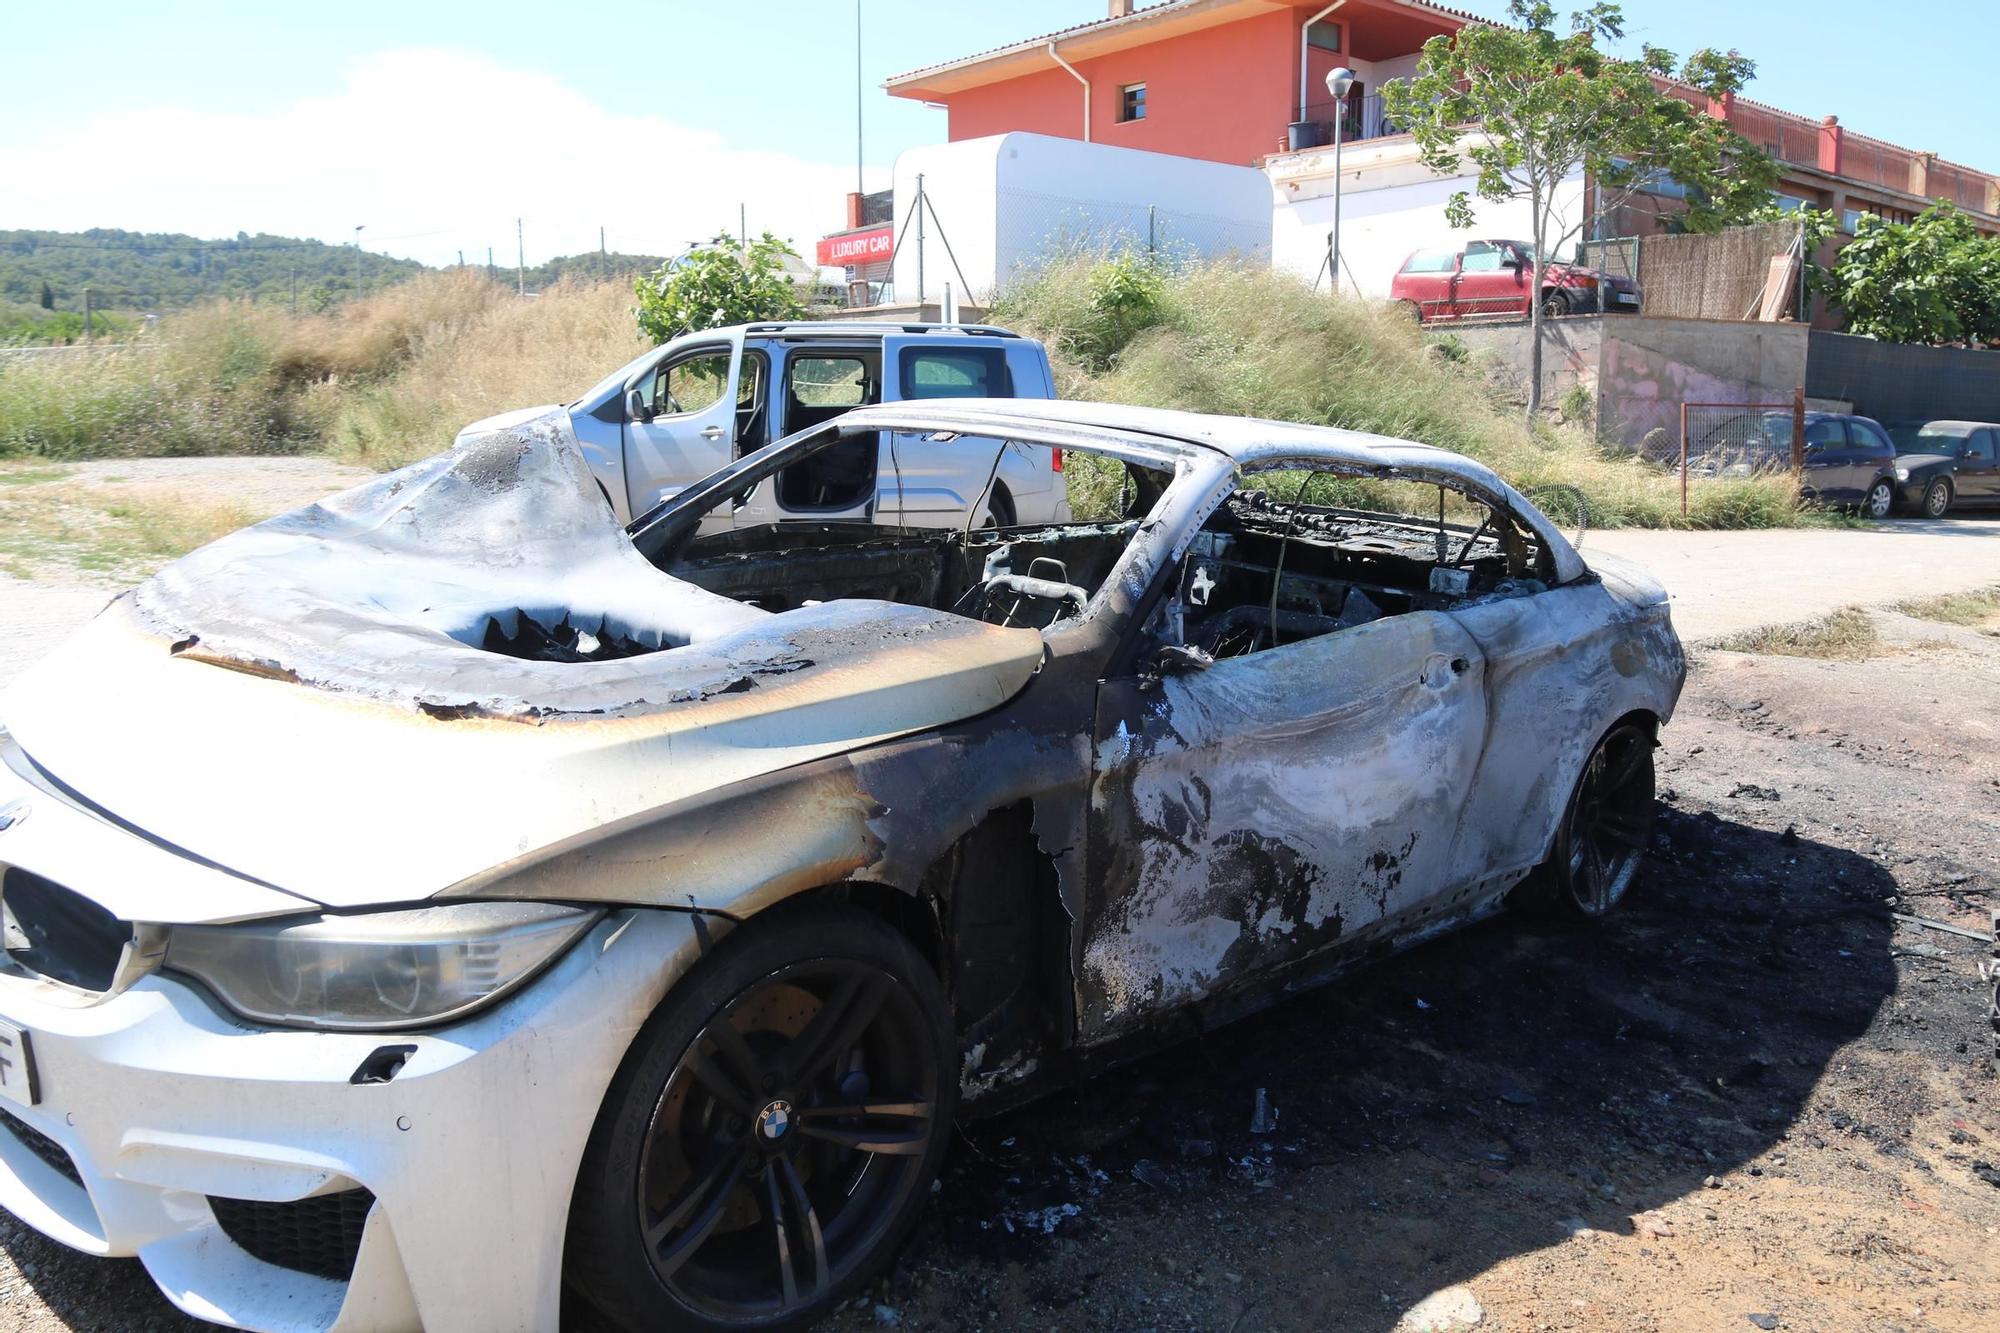 Les imatges del cotxe calcinat propietat del sospitós del tiroteig mortal a Girona